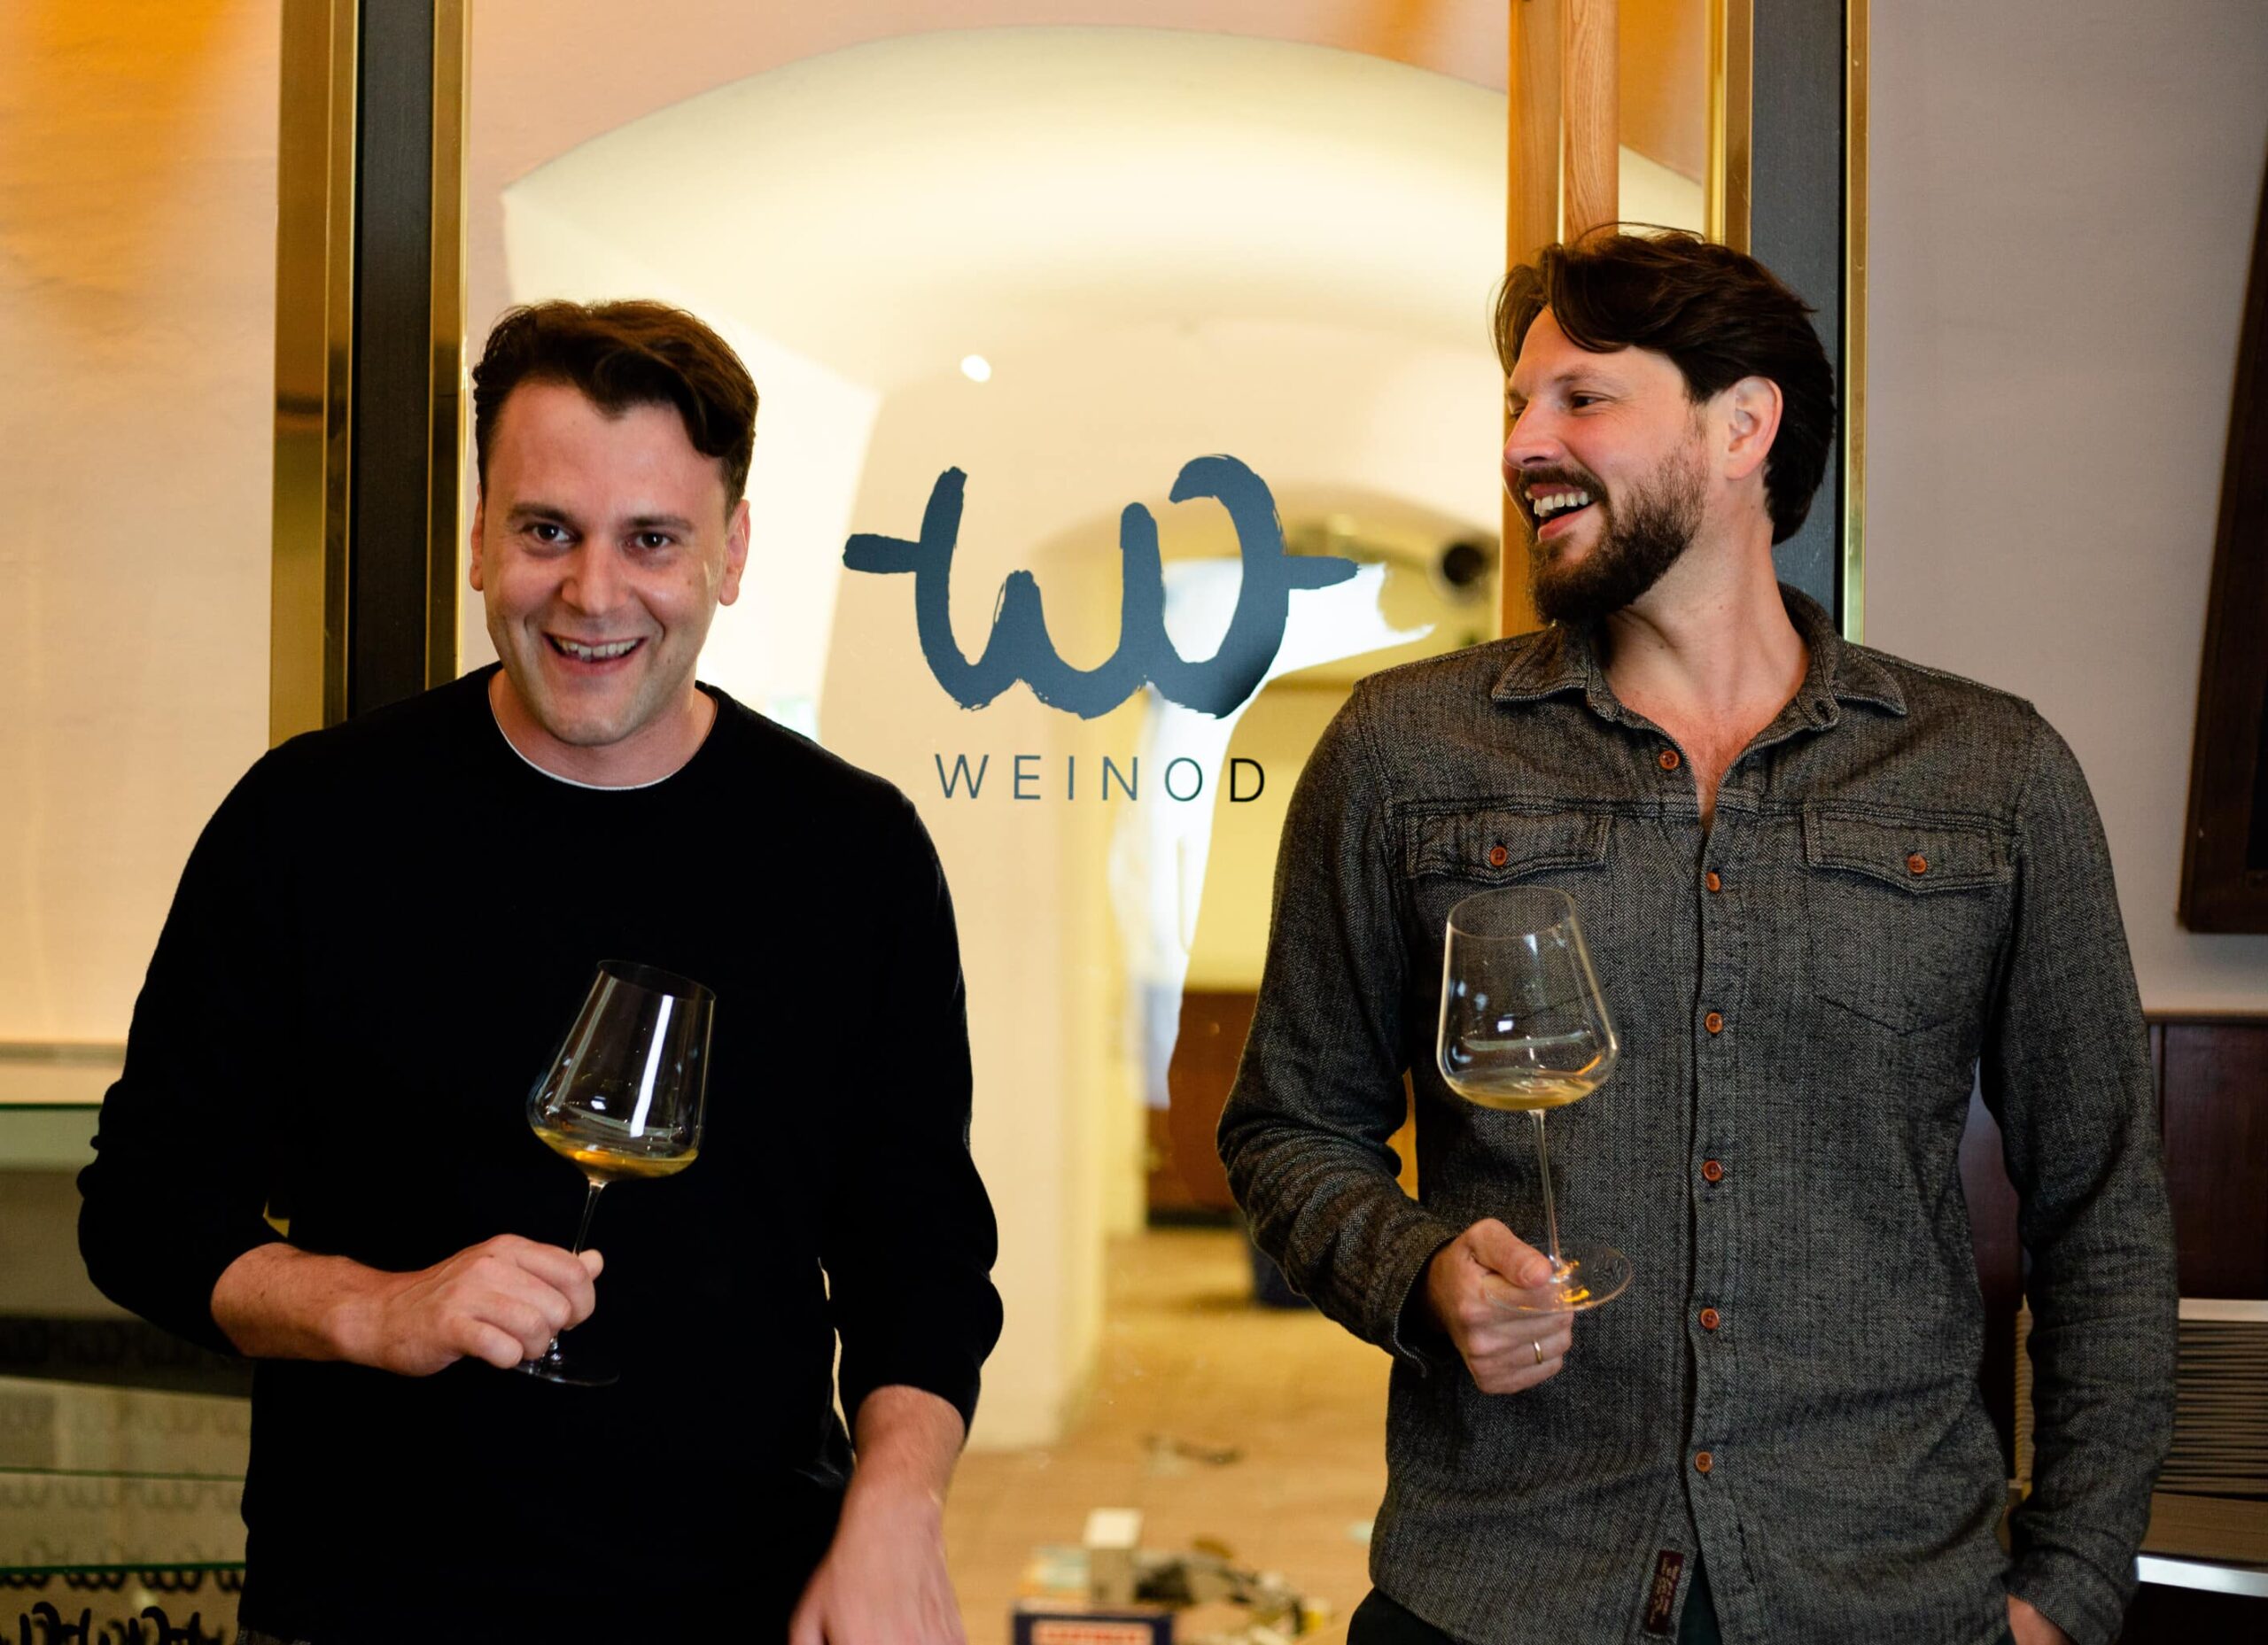 Header-Bild: Mathias und Stefan stehen mit einem Weinglas in der Hand vor dem WEINOD Eingang und freuen sich.